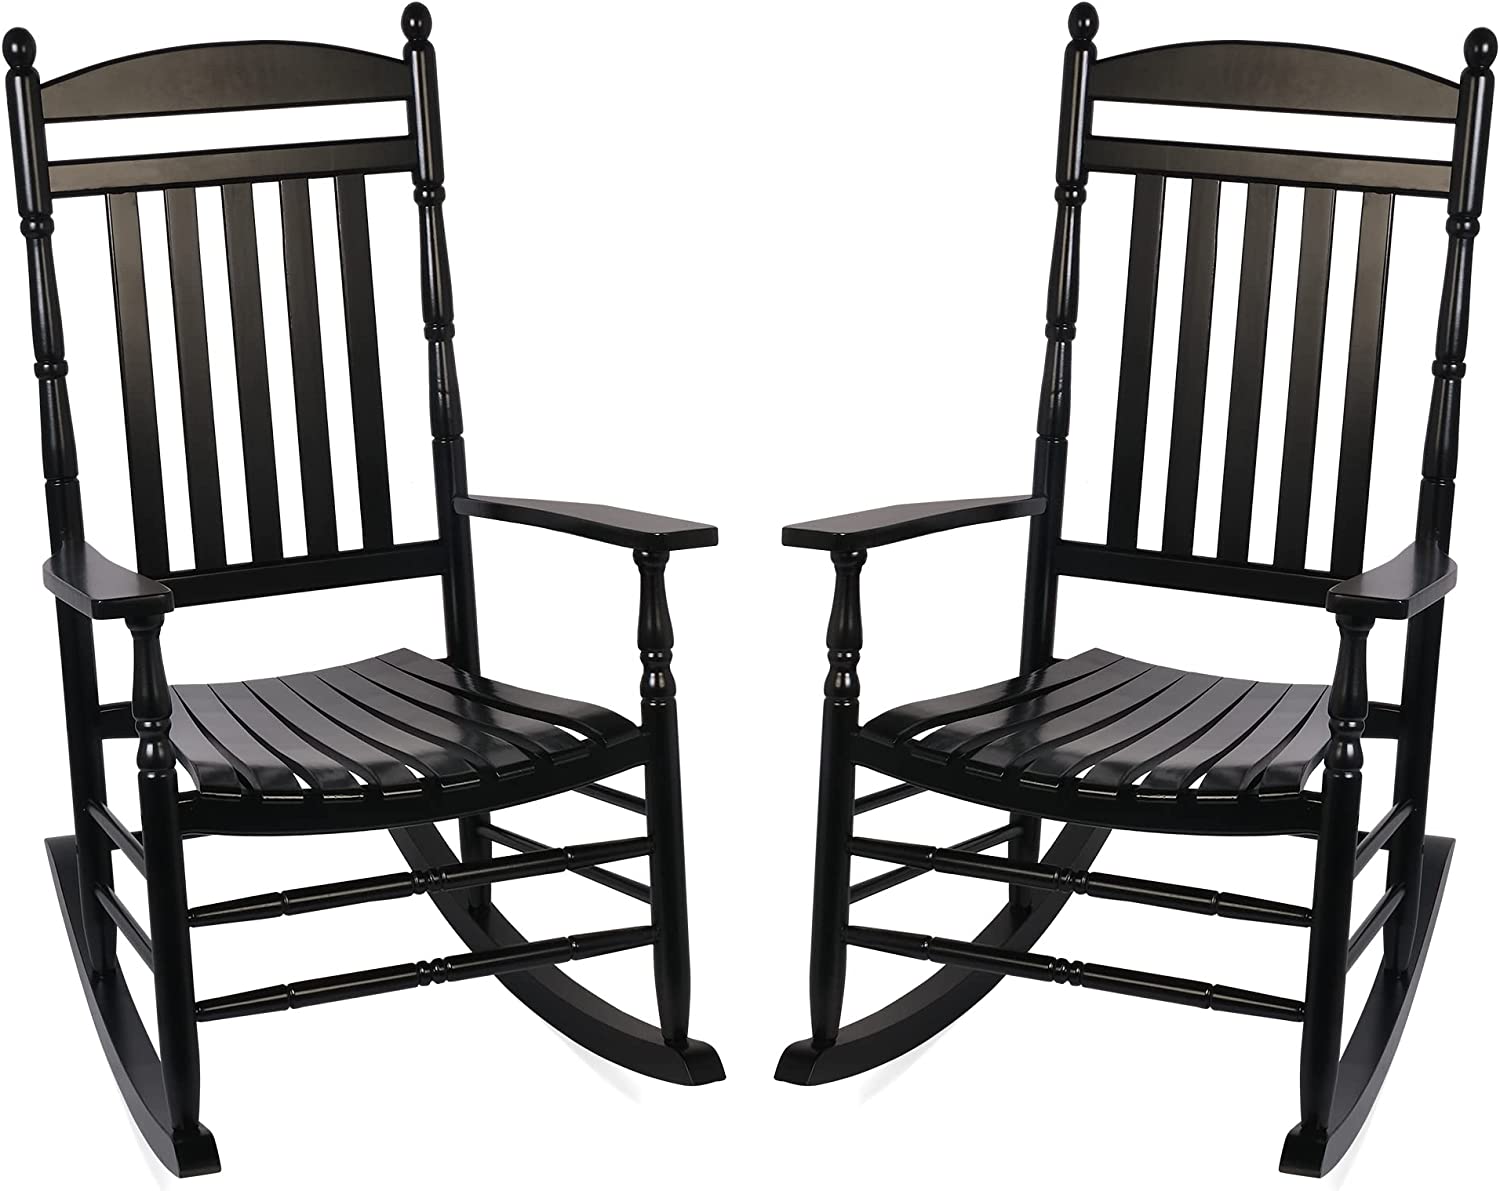 Set of 2 Outdoor Rocking Chairs, Outdoor Indoor Oversized Patio Rocker Chair High Back Rocker, Black